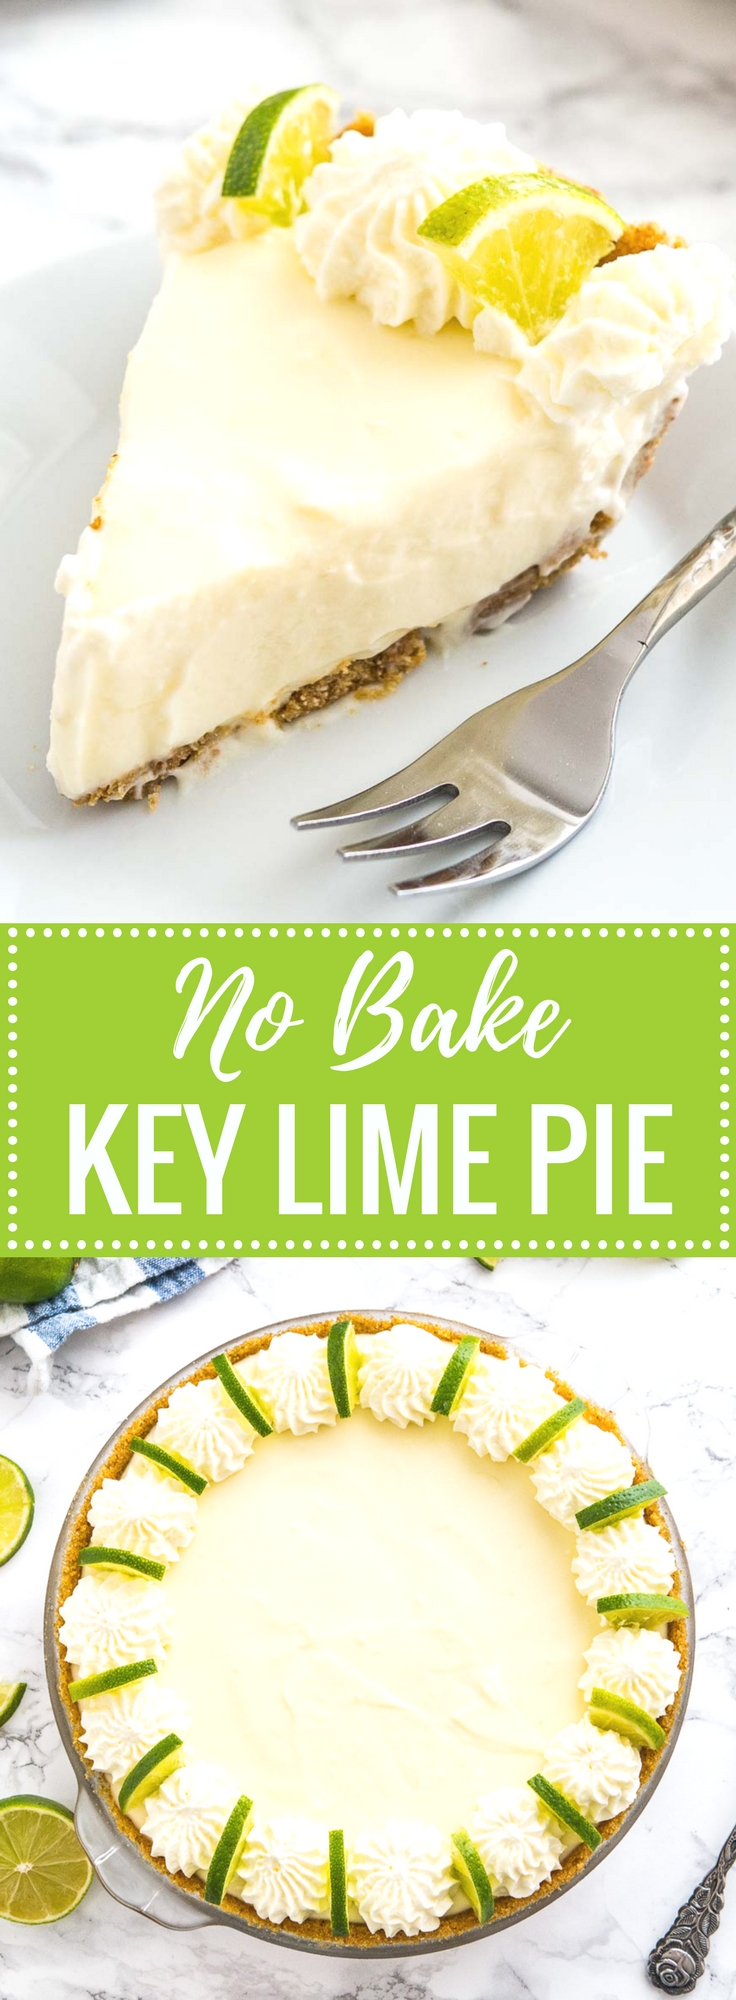 18 desserts Summer lime pie ideas